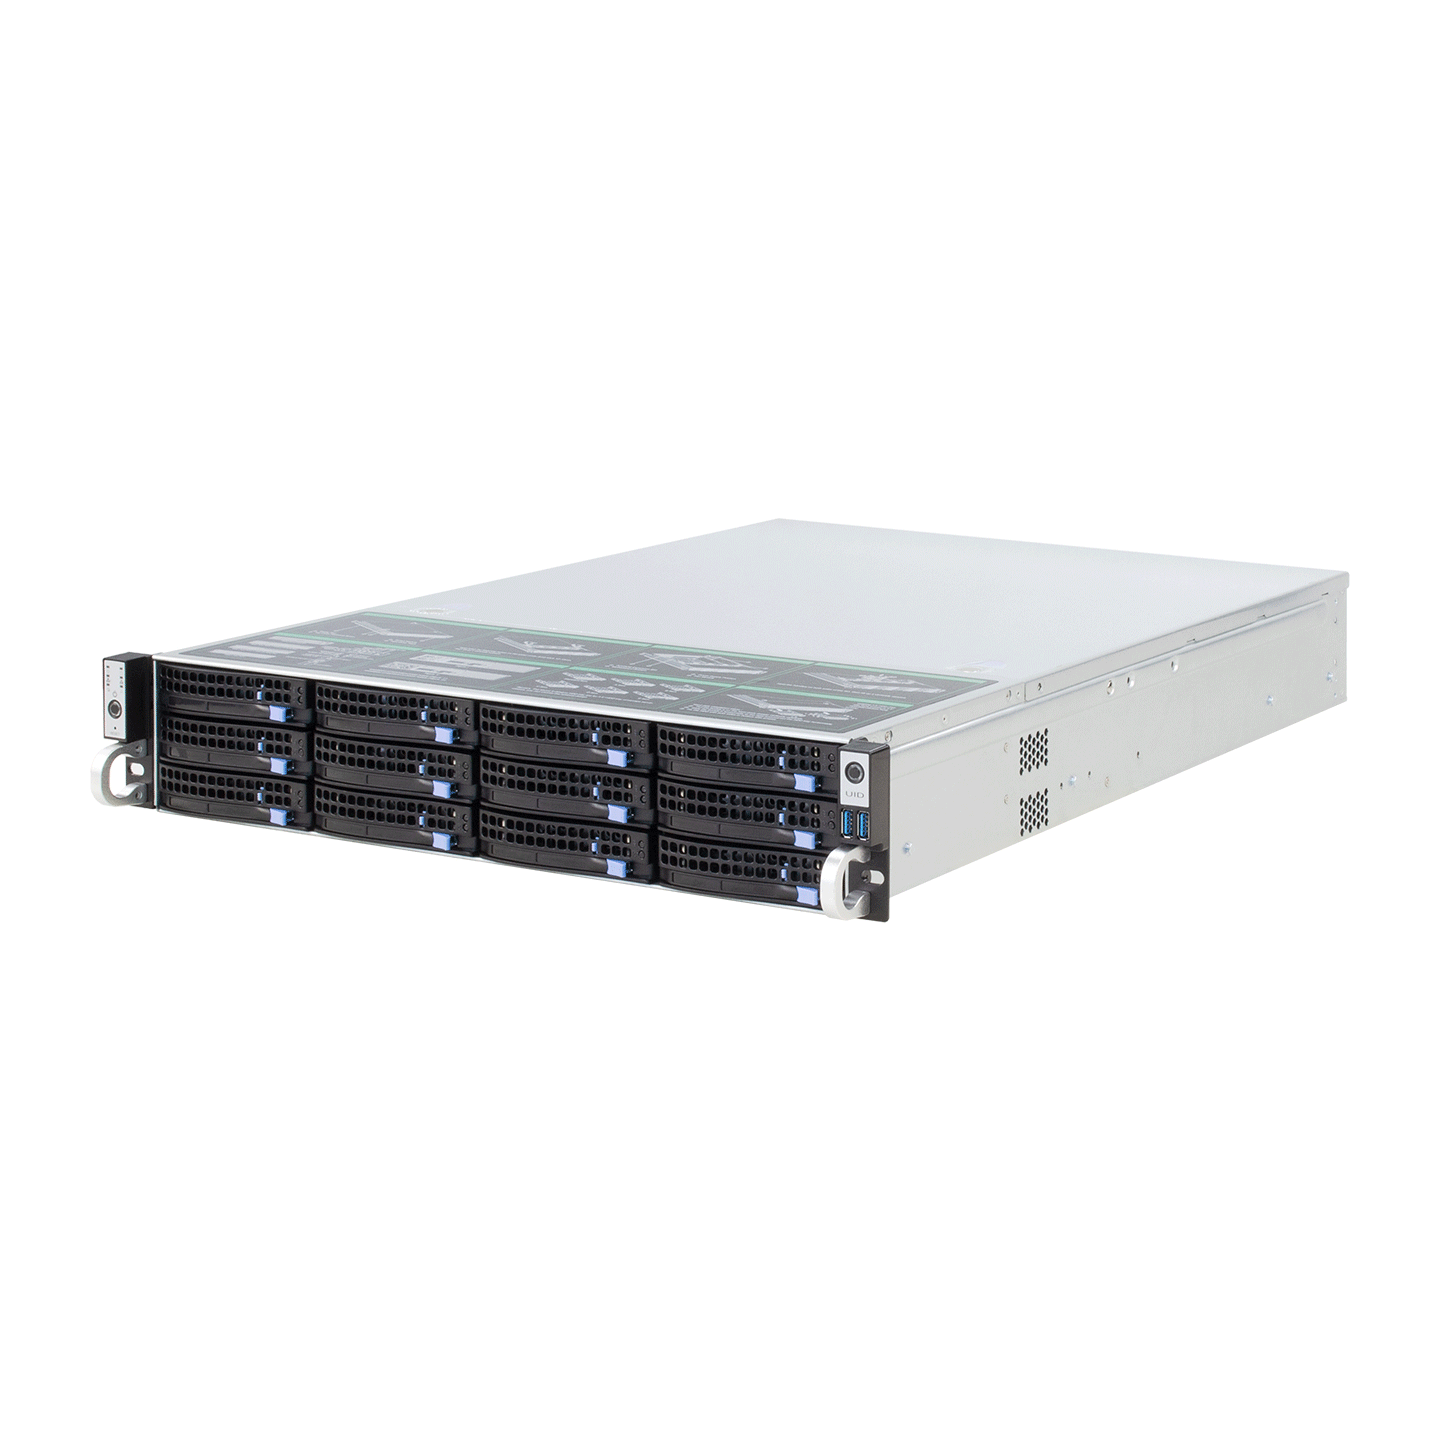 12或24盘位高性能高密度监控视频存储服务器,支持ONVIF-RTSP和主流品牌SDK方式接入,是集监控存储和流媒体转发于一体的视频监控服务器